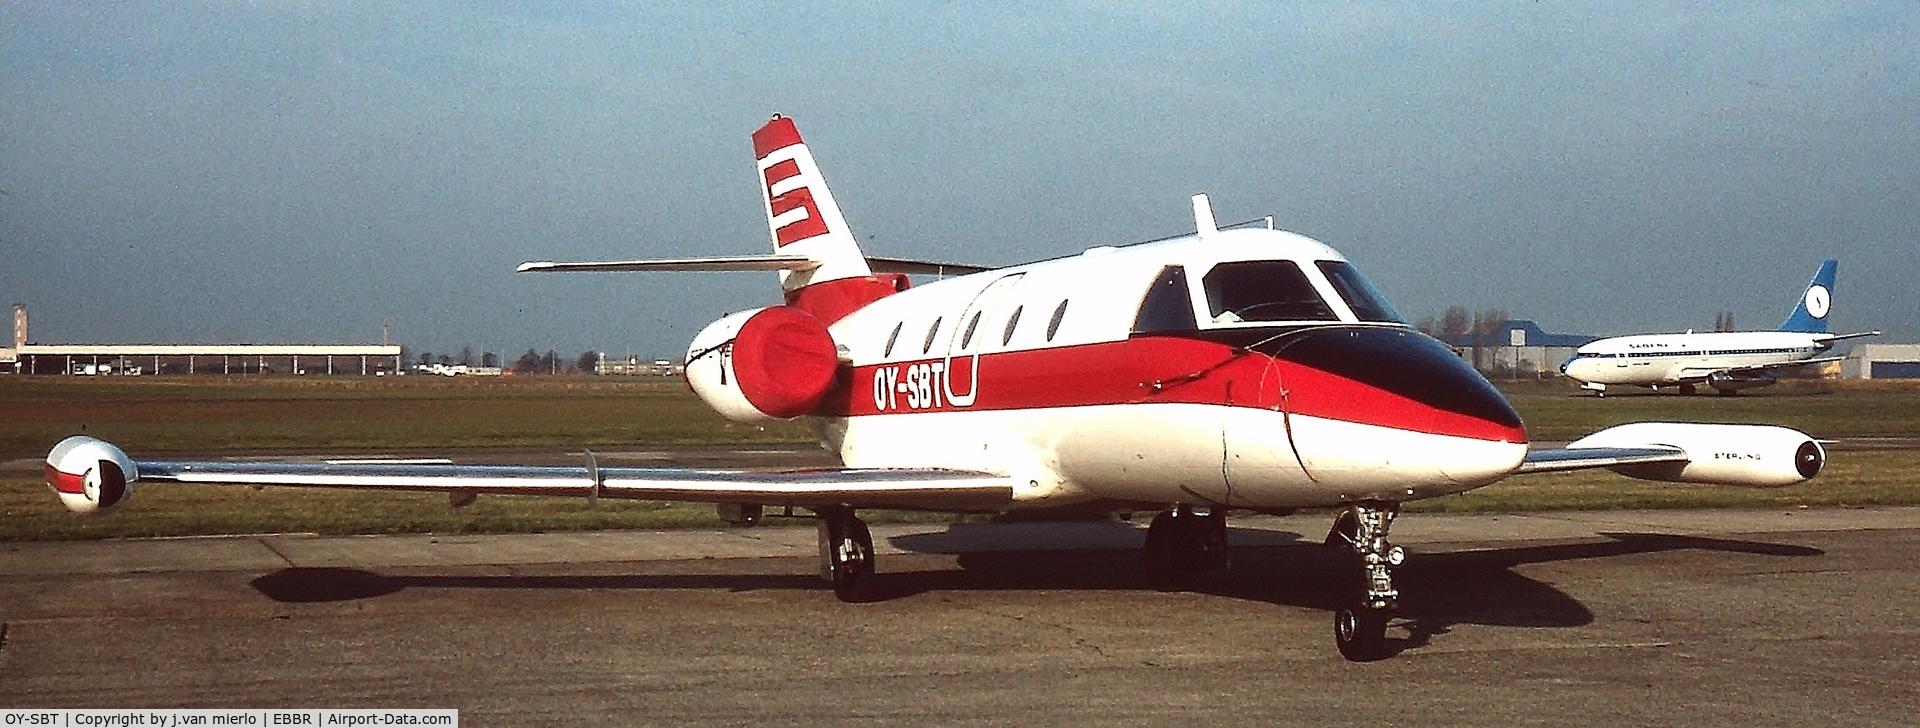 OY-SBT, 1976 Aerospatiale SN-601 Corvette C/N 33, Brussels, BelgiumGeneral Aviation Terminal